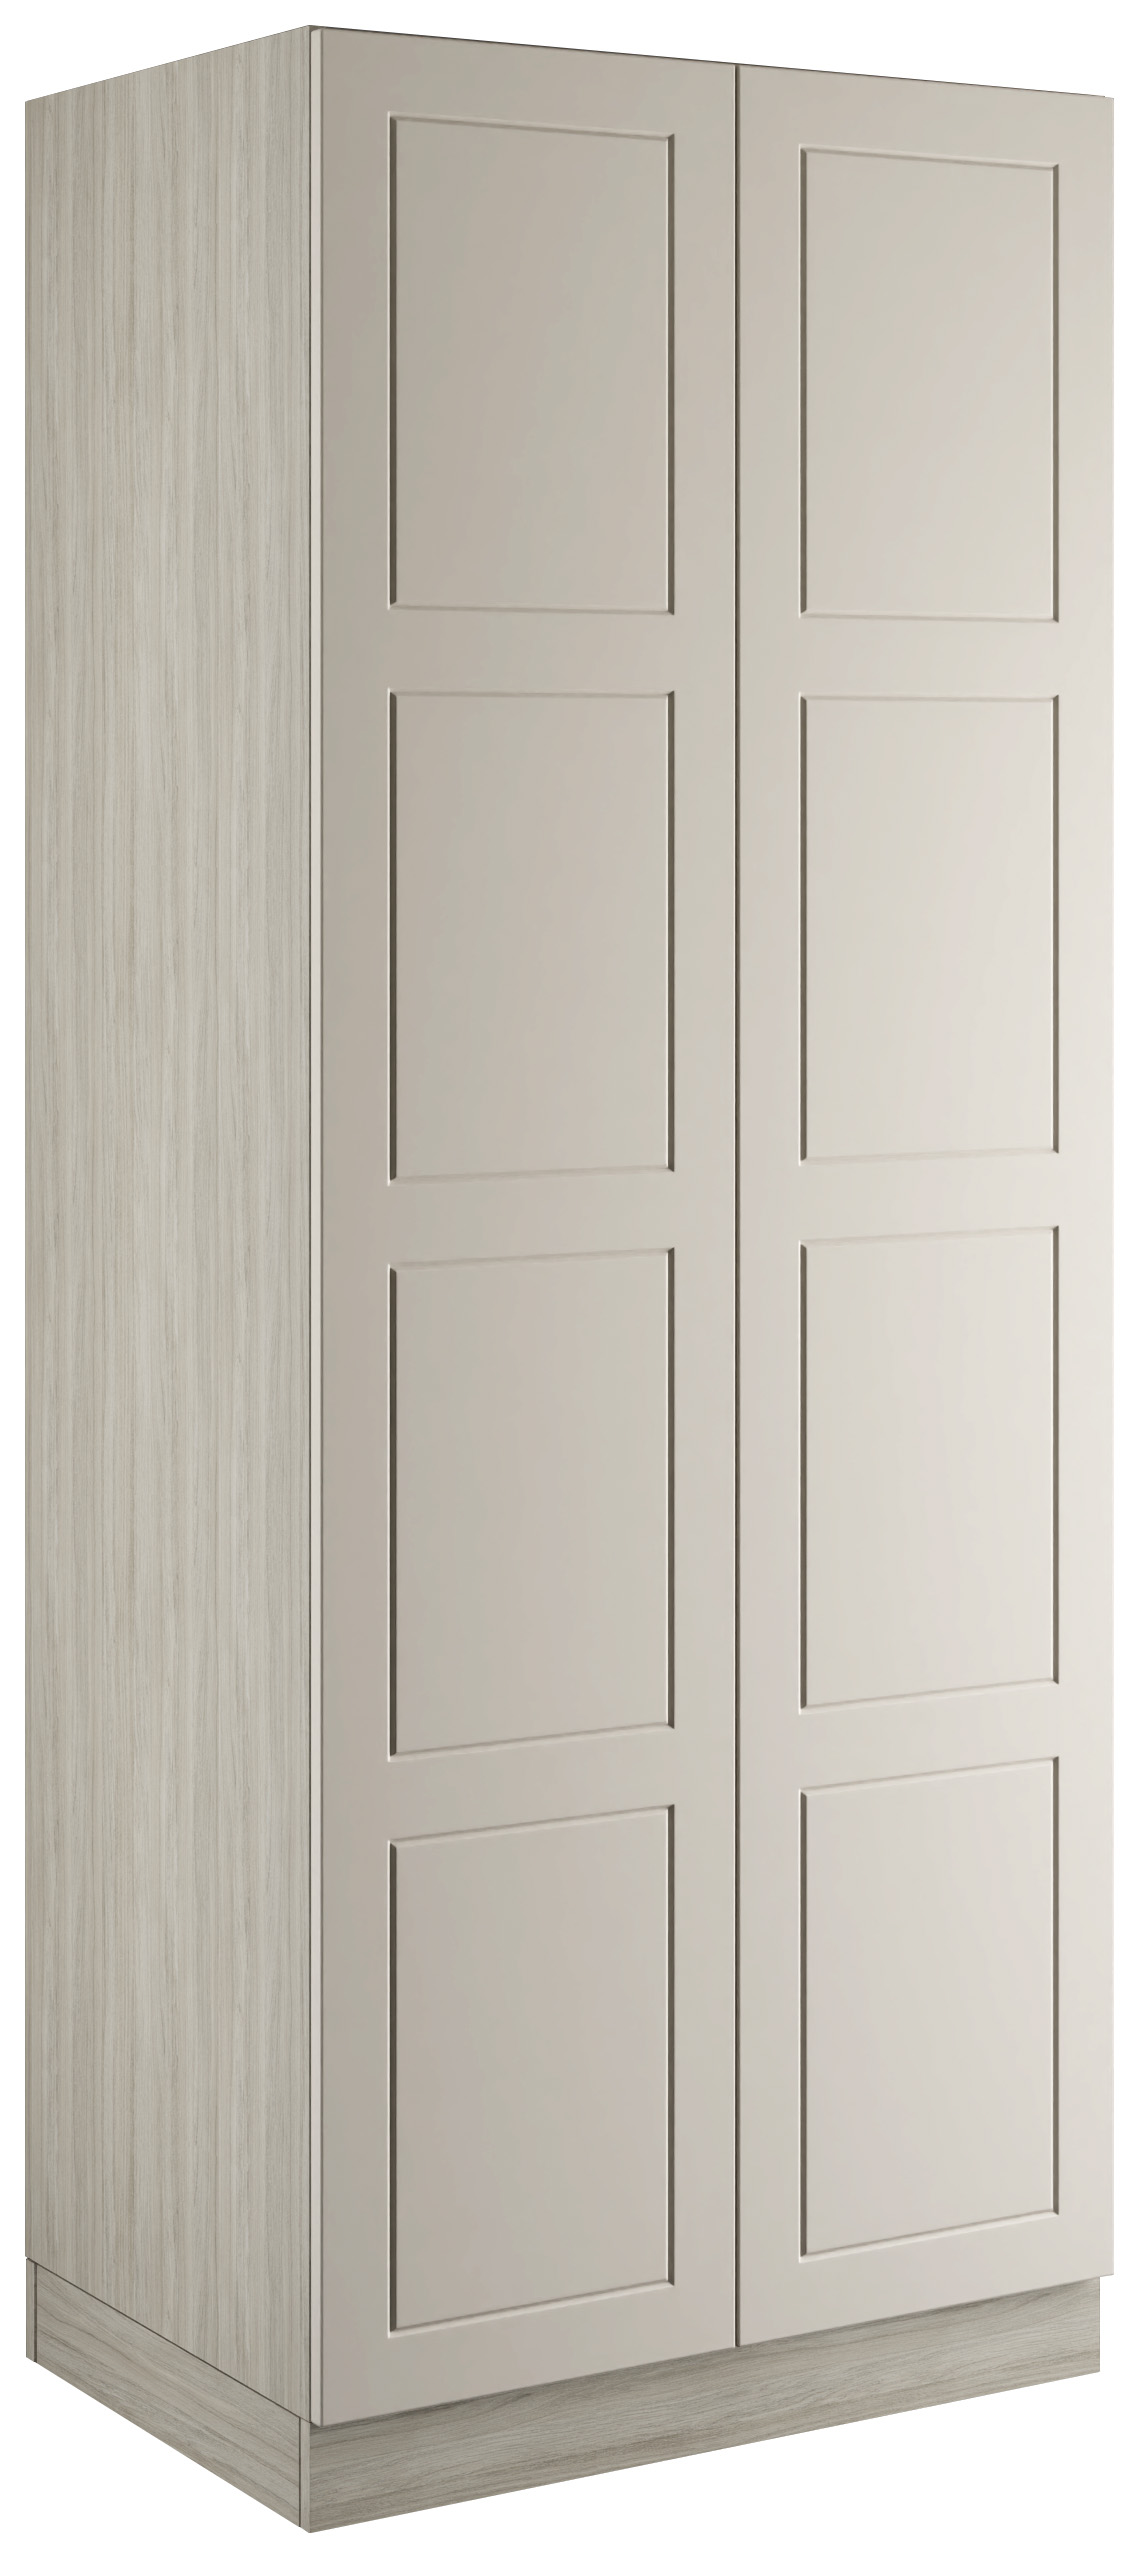 Bramham Taupe Grey Double Wardrobe with Single Rail - 900 x 2260 x 608mm